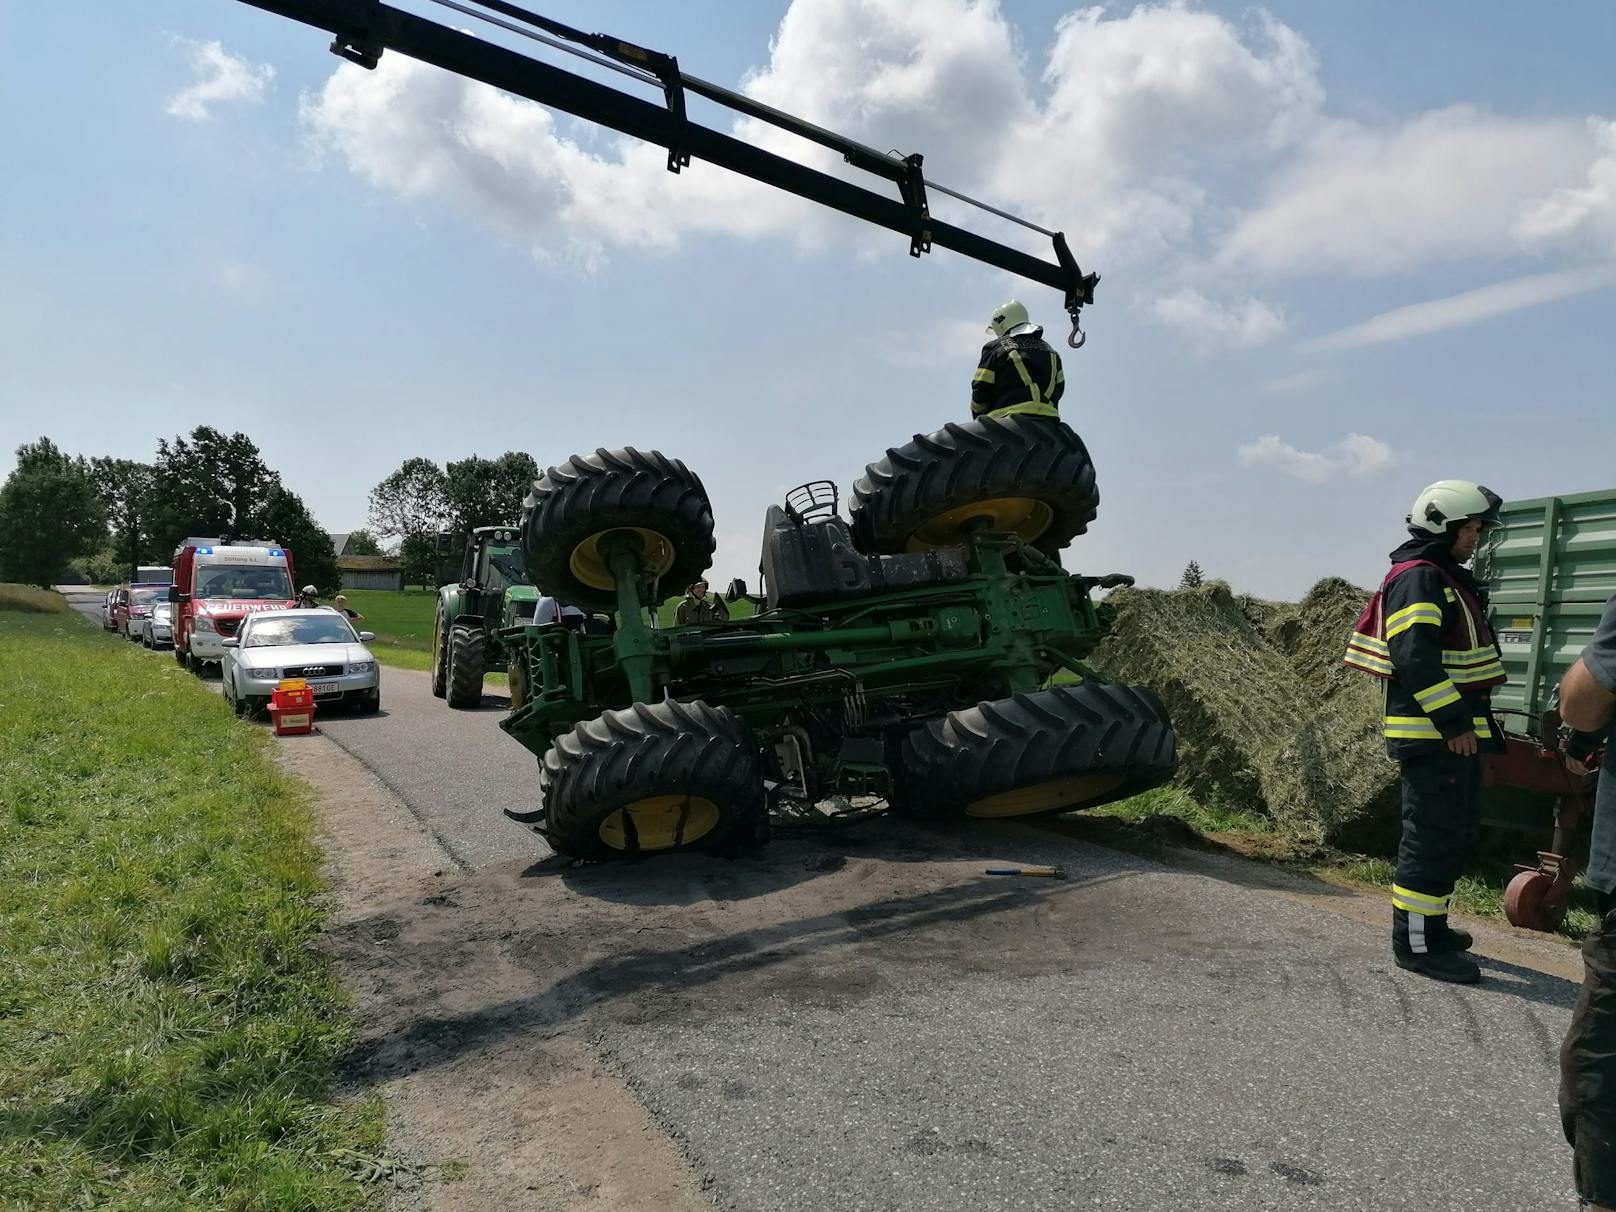 Der Traktor kippte aus unbekannter Ursache um, ein Kind wurde verletzt.